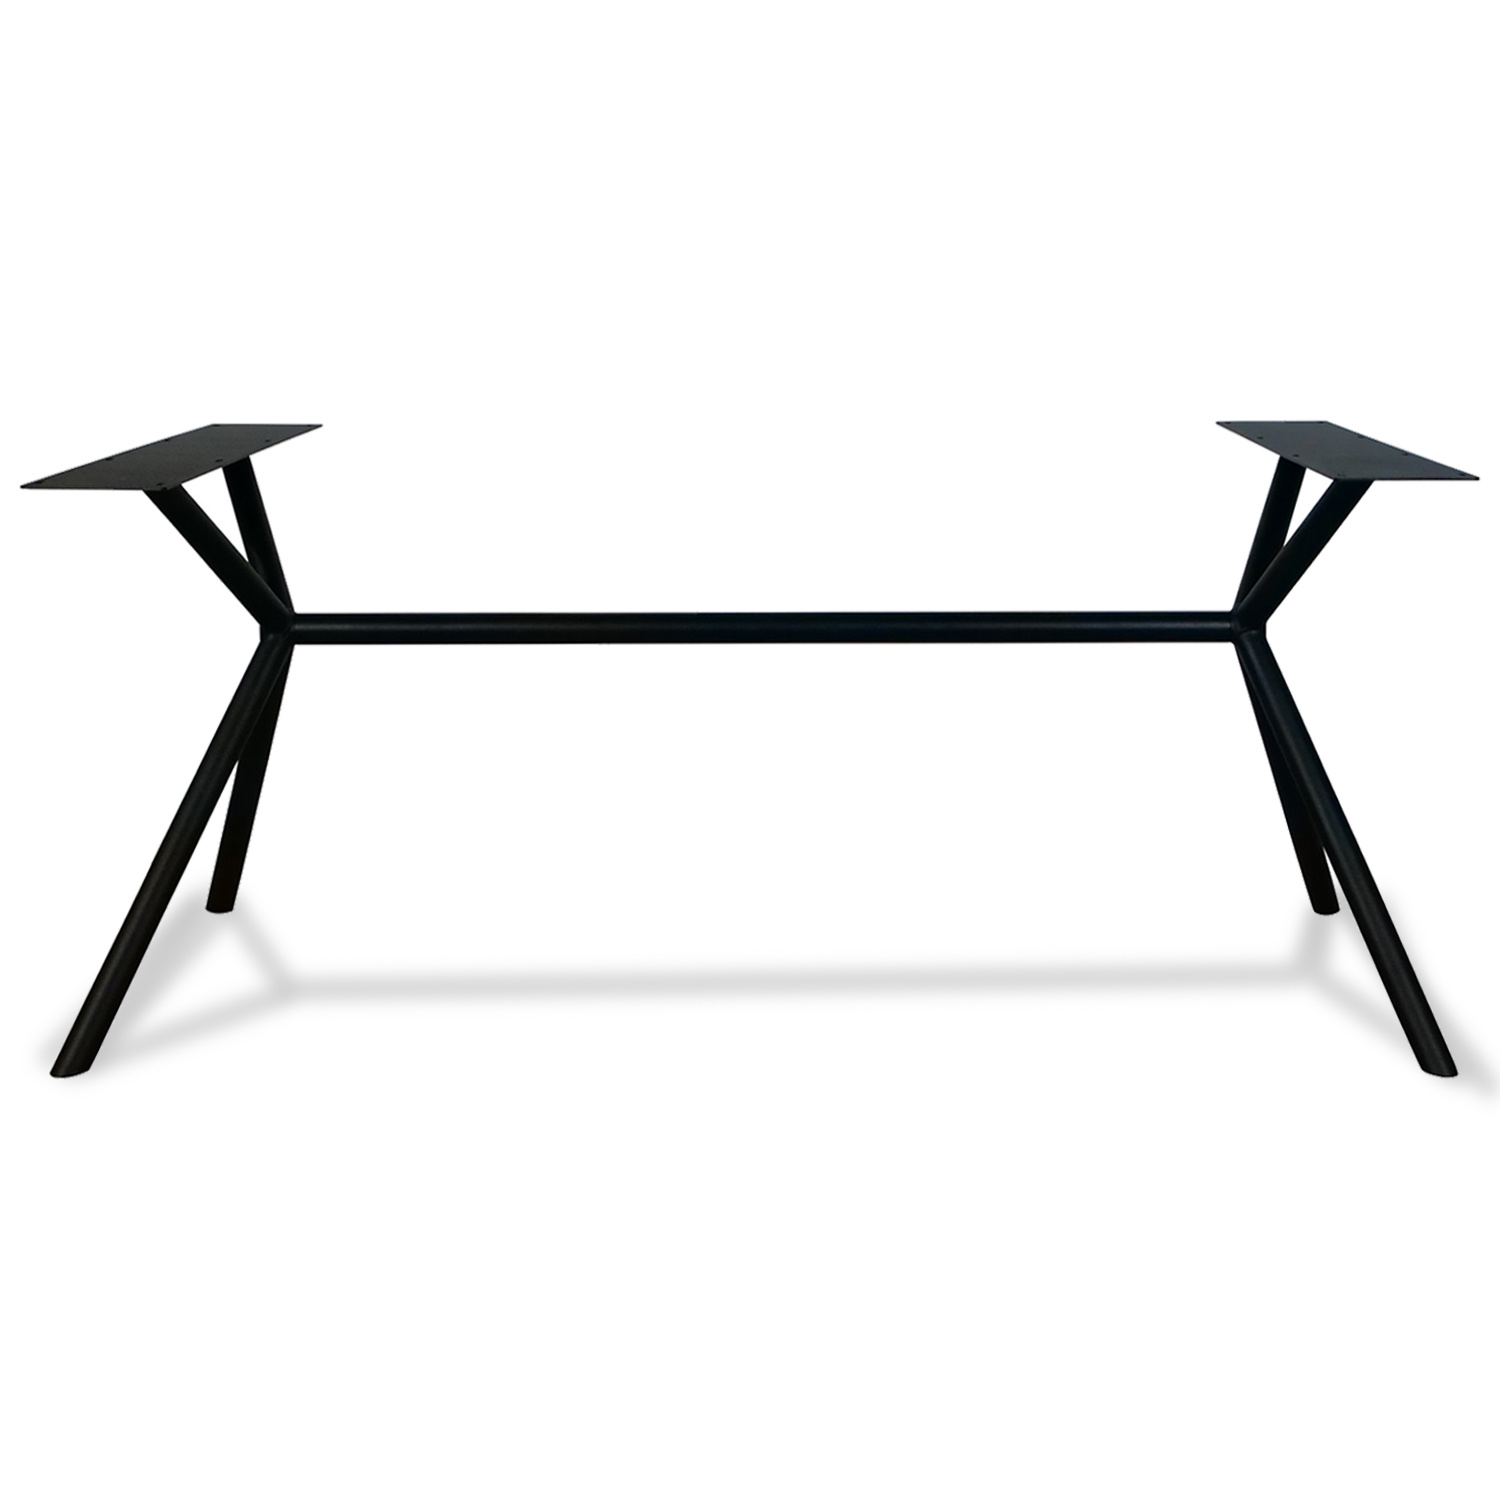  Tischgestell Metall 3D X-Beine Frame rund - 3-Teilig - 4,2 cm - 70x246 cm - 72cm hoch - Stahl Tischuntergestell - Rechteck - Beschichtet - Schwarz